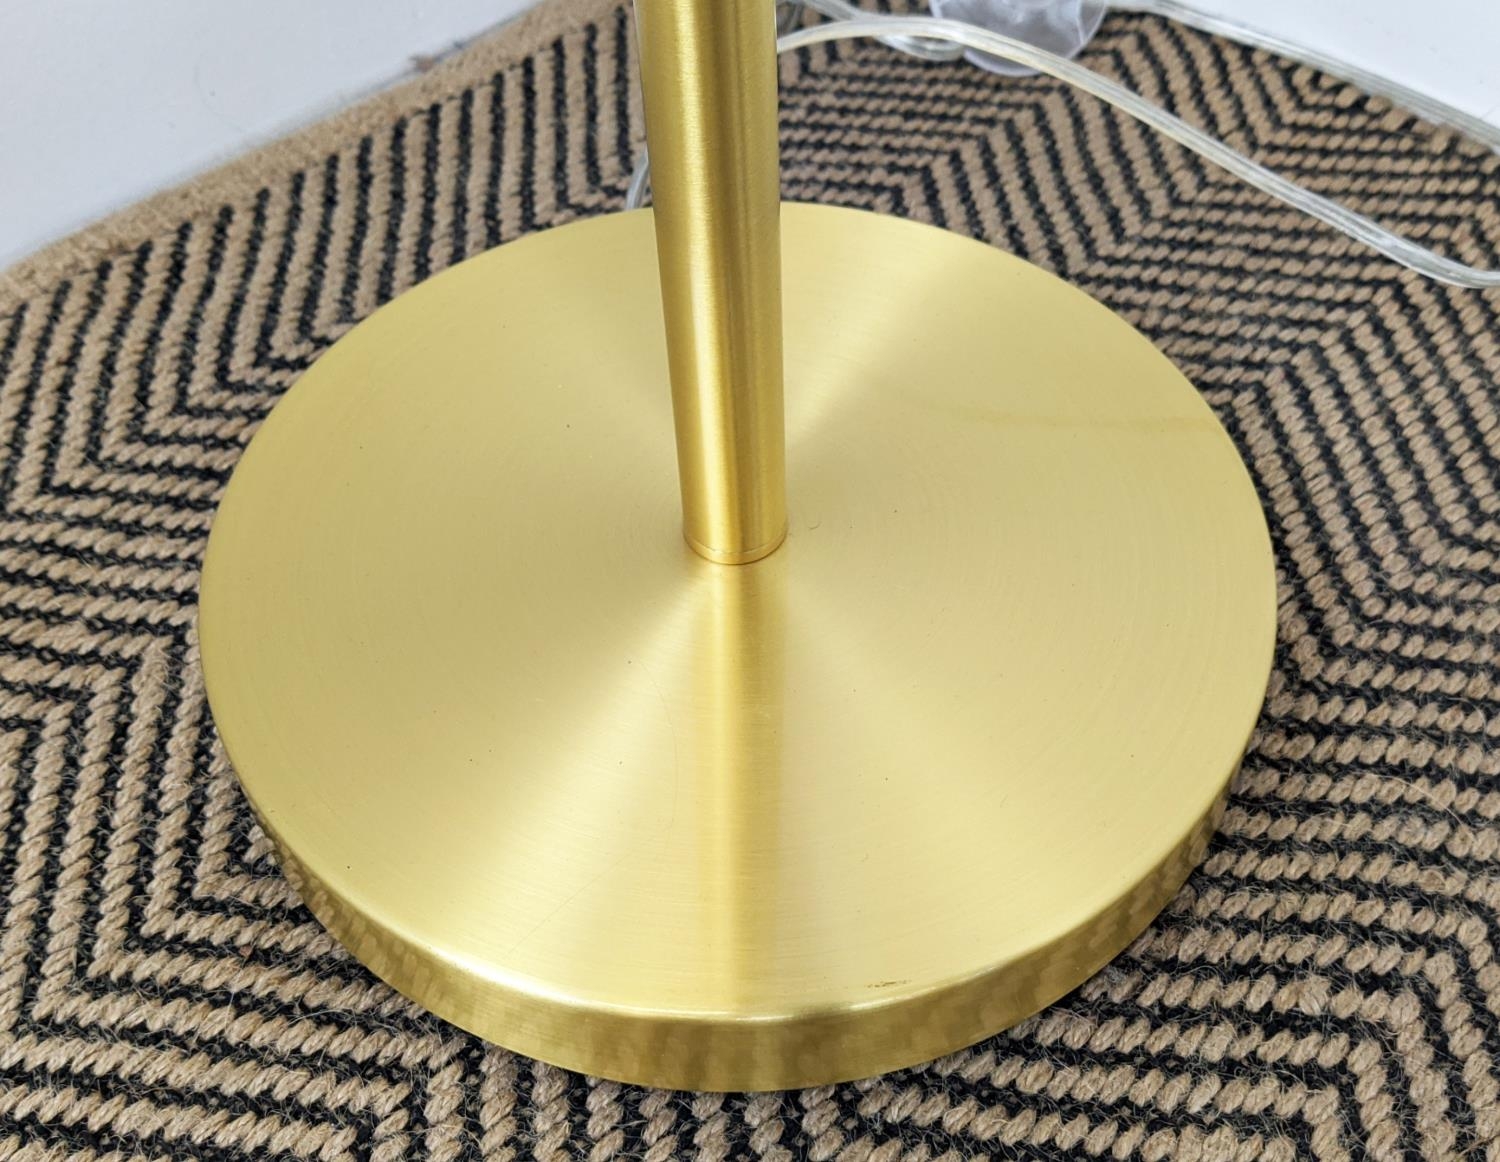 LAUREN RALPH LAUREN HOME FLOOR LAMP, gilt metal, with shade, 143cm H. - Image 3 of 5